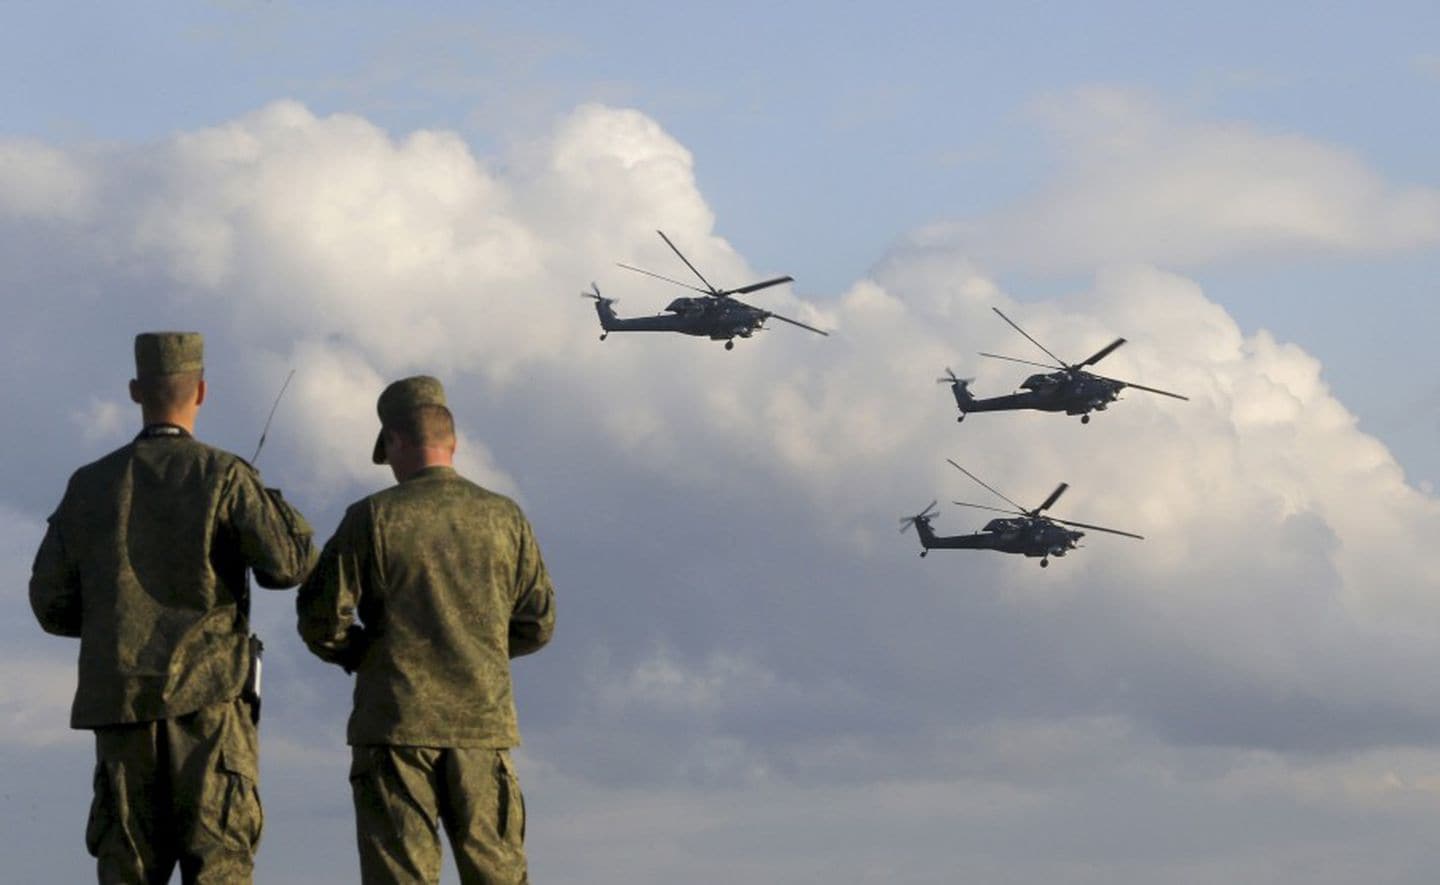 Ρωσικά ελικόπτερα προσγειώνονται σε αμερικανική βάση στην Συρία: «Αλλαγή φρουράς» στην Μέση Ανατολή